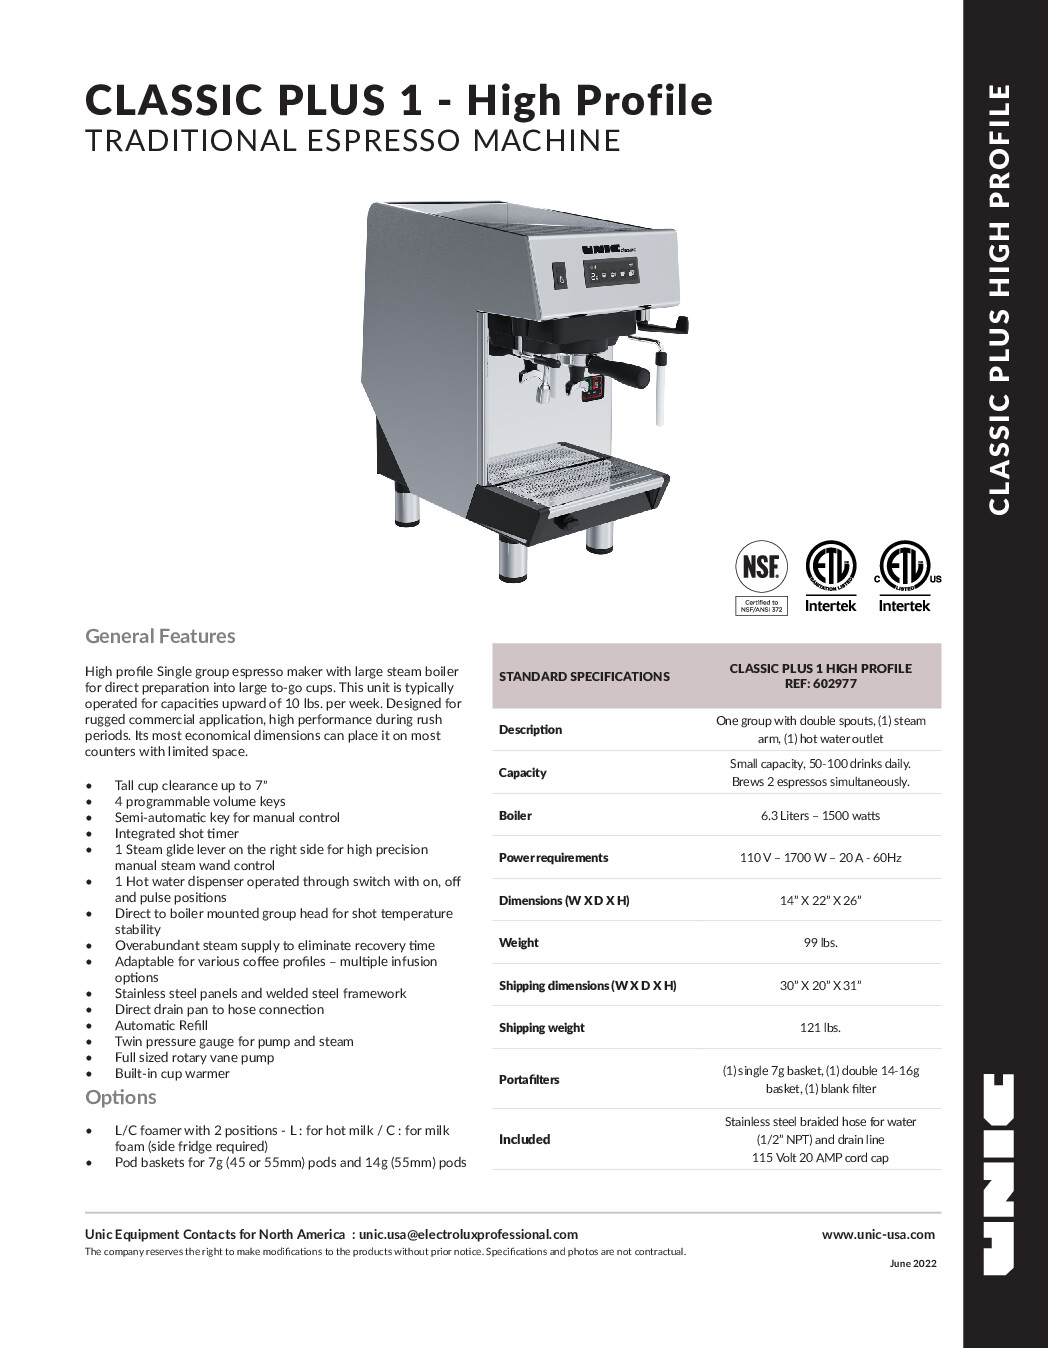 Grindmaster-UNIC-Crathco CLASSIC 1 HP Espresso Cappuccino Machine